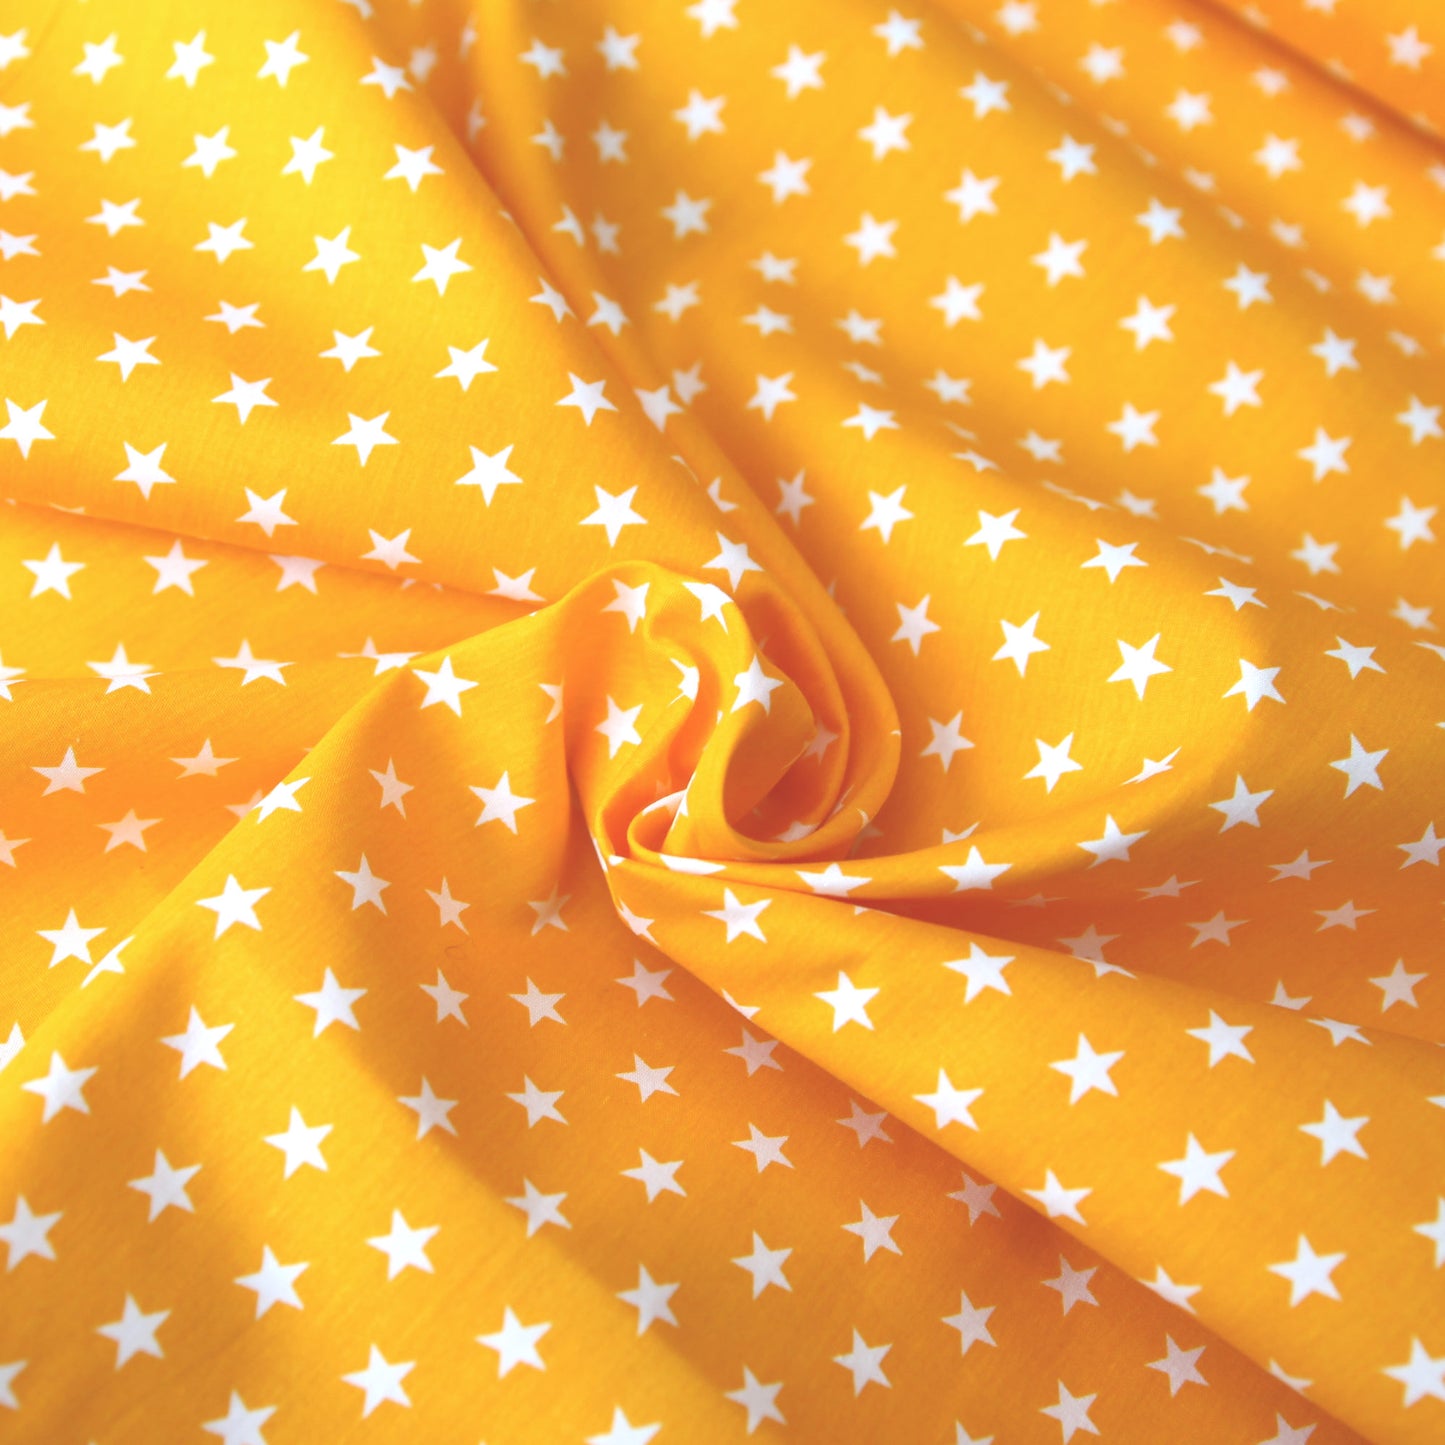 Baumwollstoff mit Sternen / Popeline " 1 cm weiße Sterne auf gelb" - Patchwork 100% Baumwolle dottergelb - Stoffe Kudellino